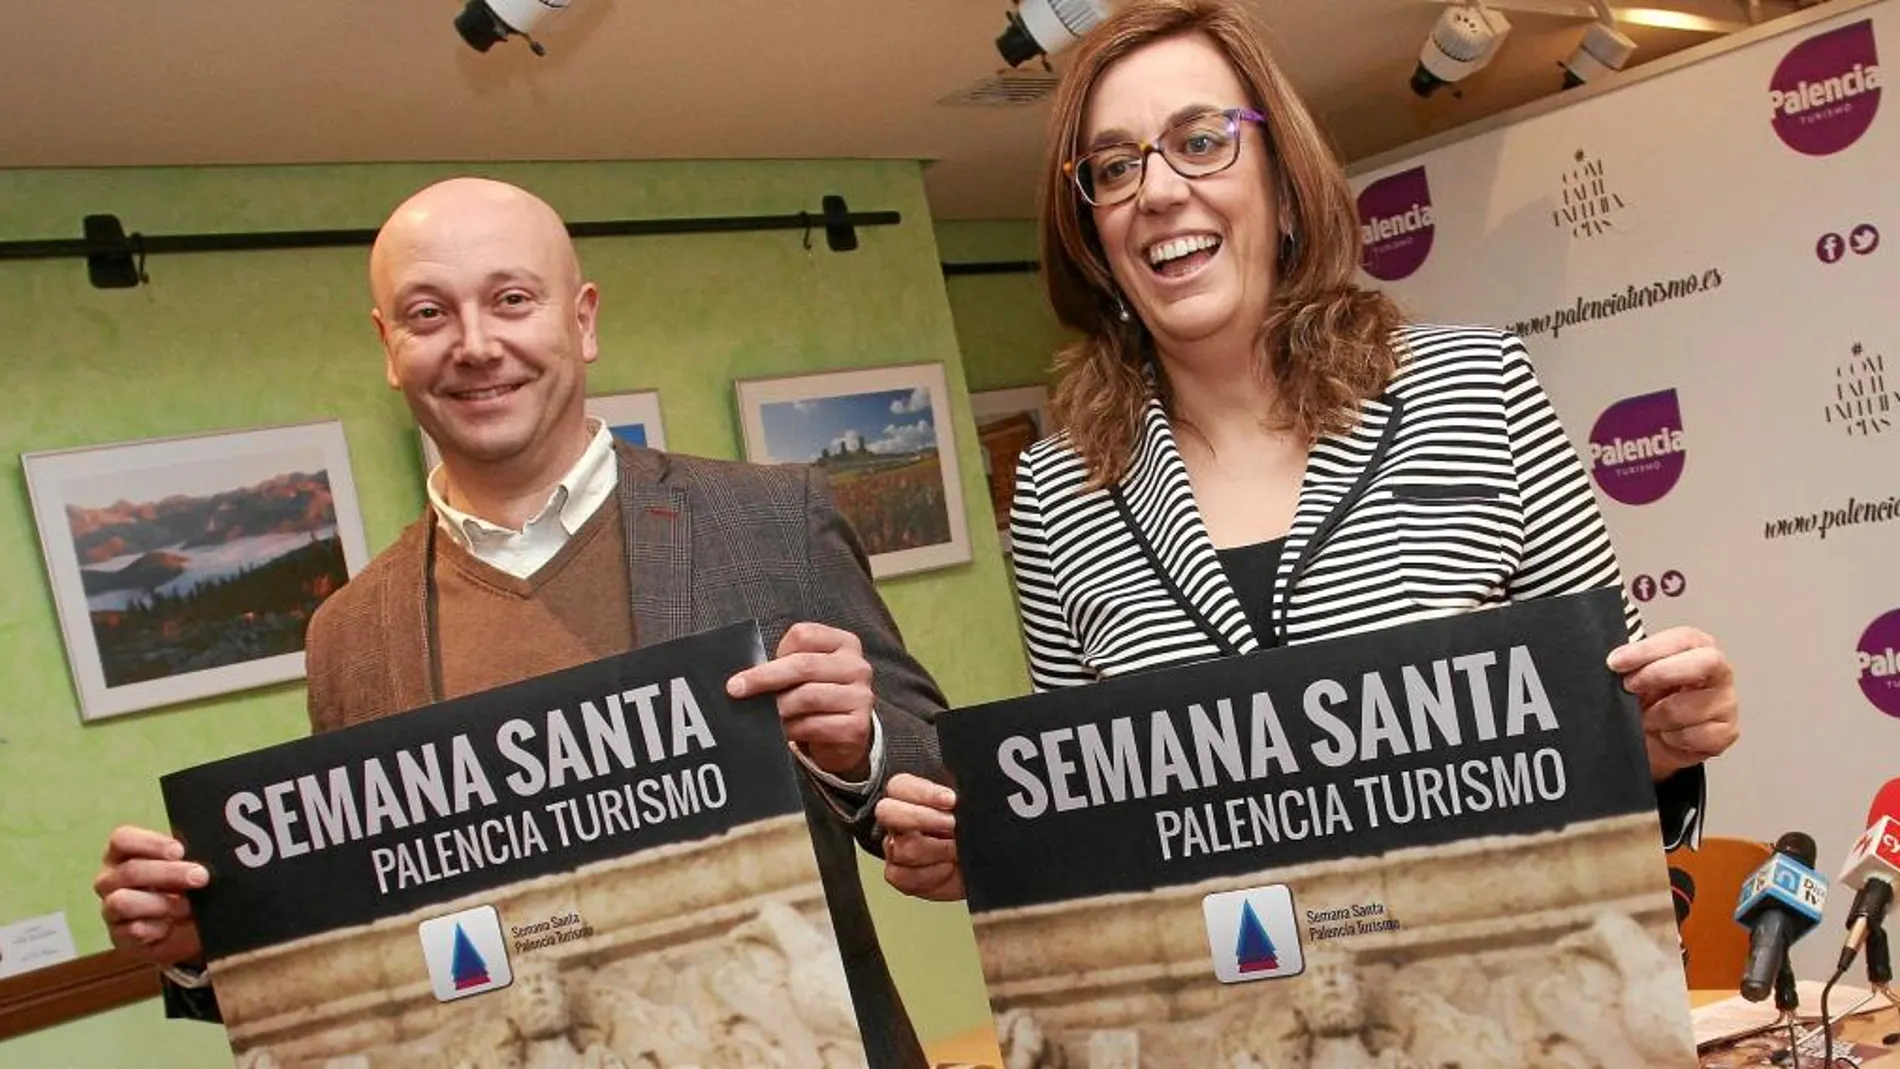 La presidenta de la Diputación de Palencia, Ángeles Armisén, y el diputado de Turismo, Luis Calderón, presentan la campaña de promoción turística de la Semana Santa 2017.